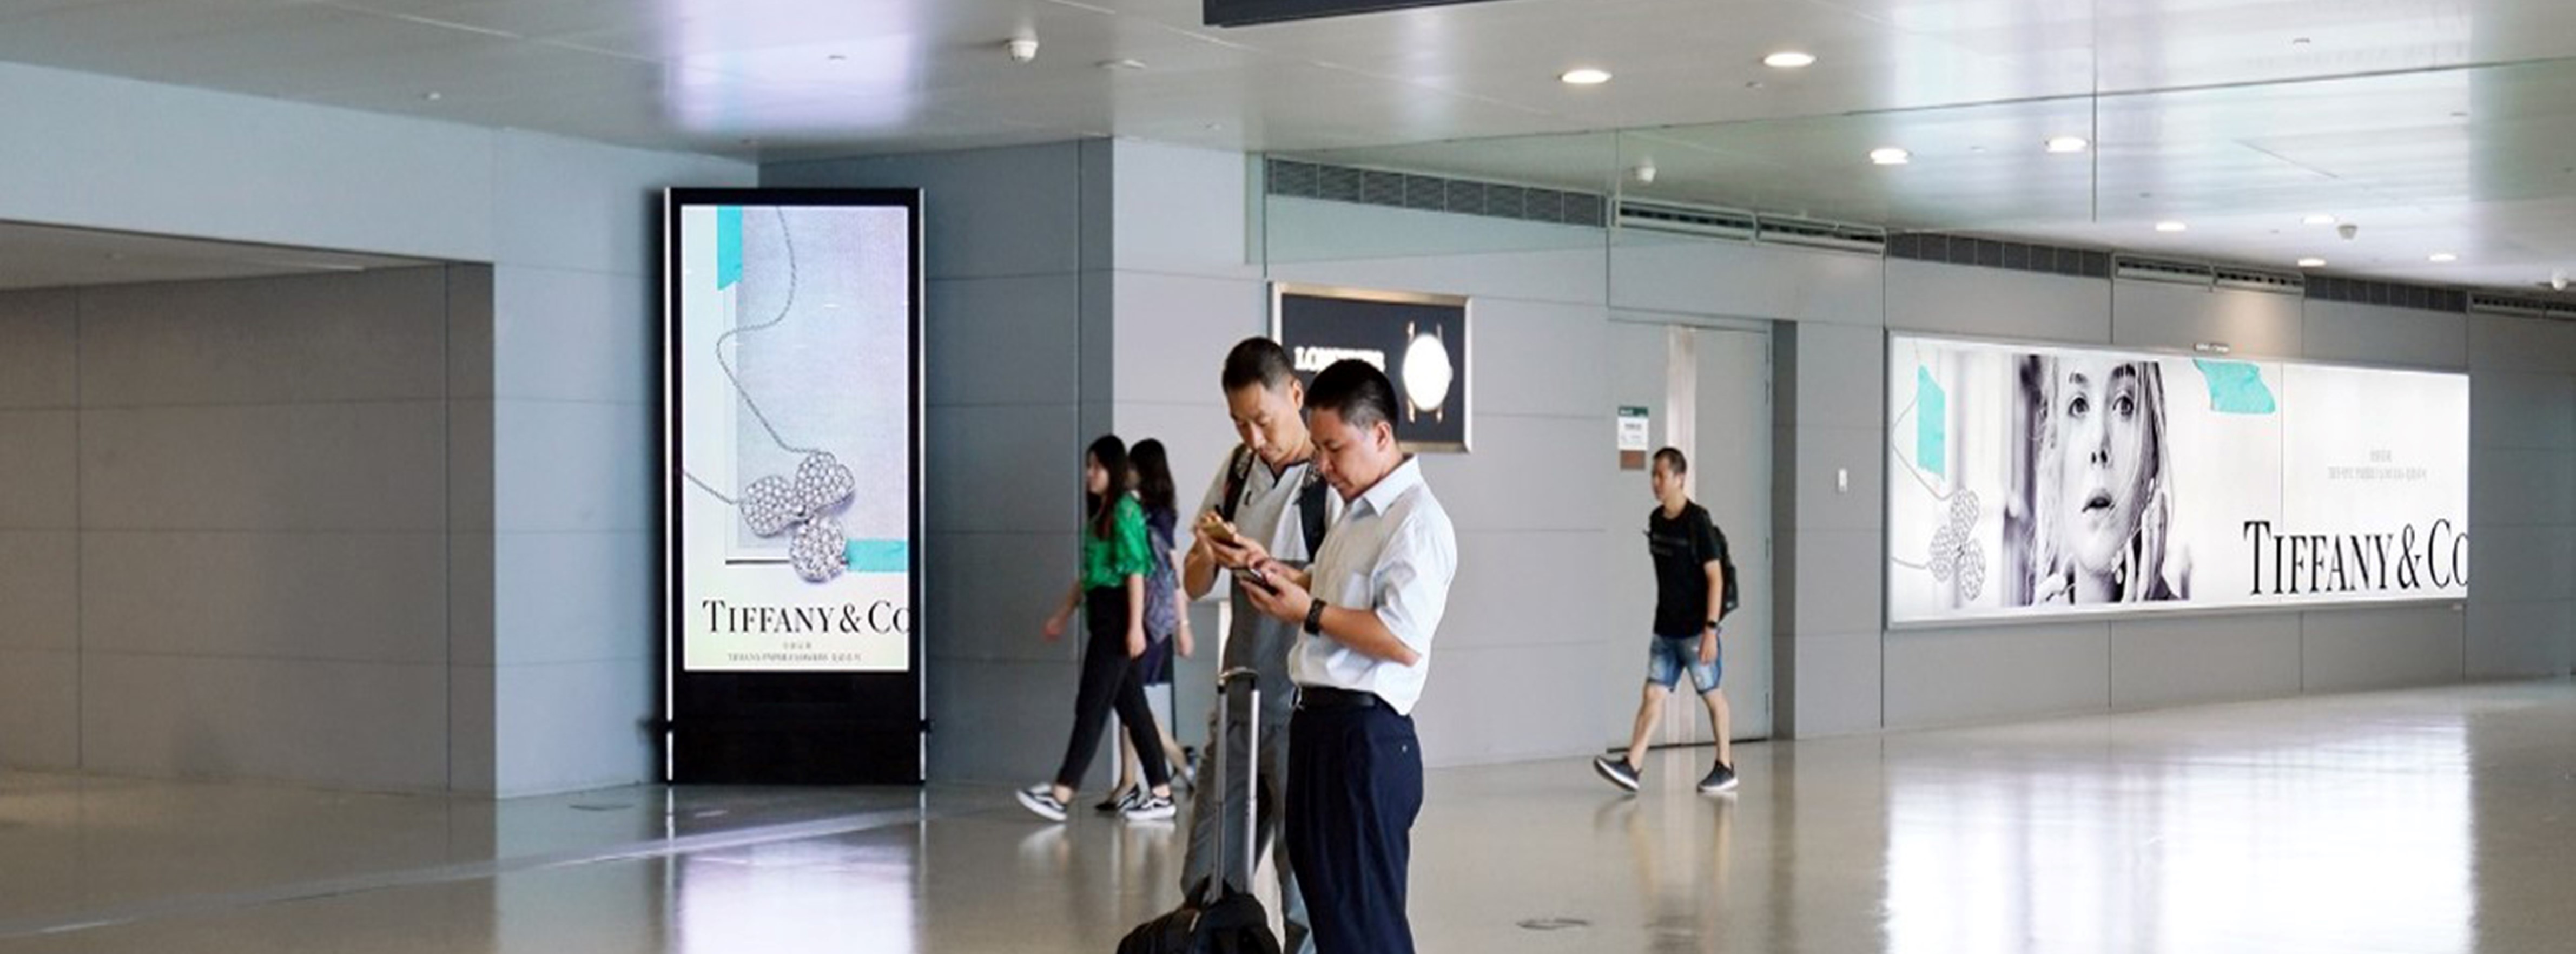 上海机场广告-虹桥T2到达长廊电子屏墙面灯箱